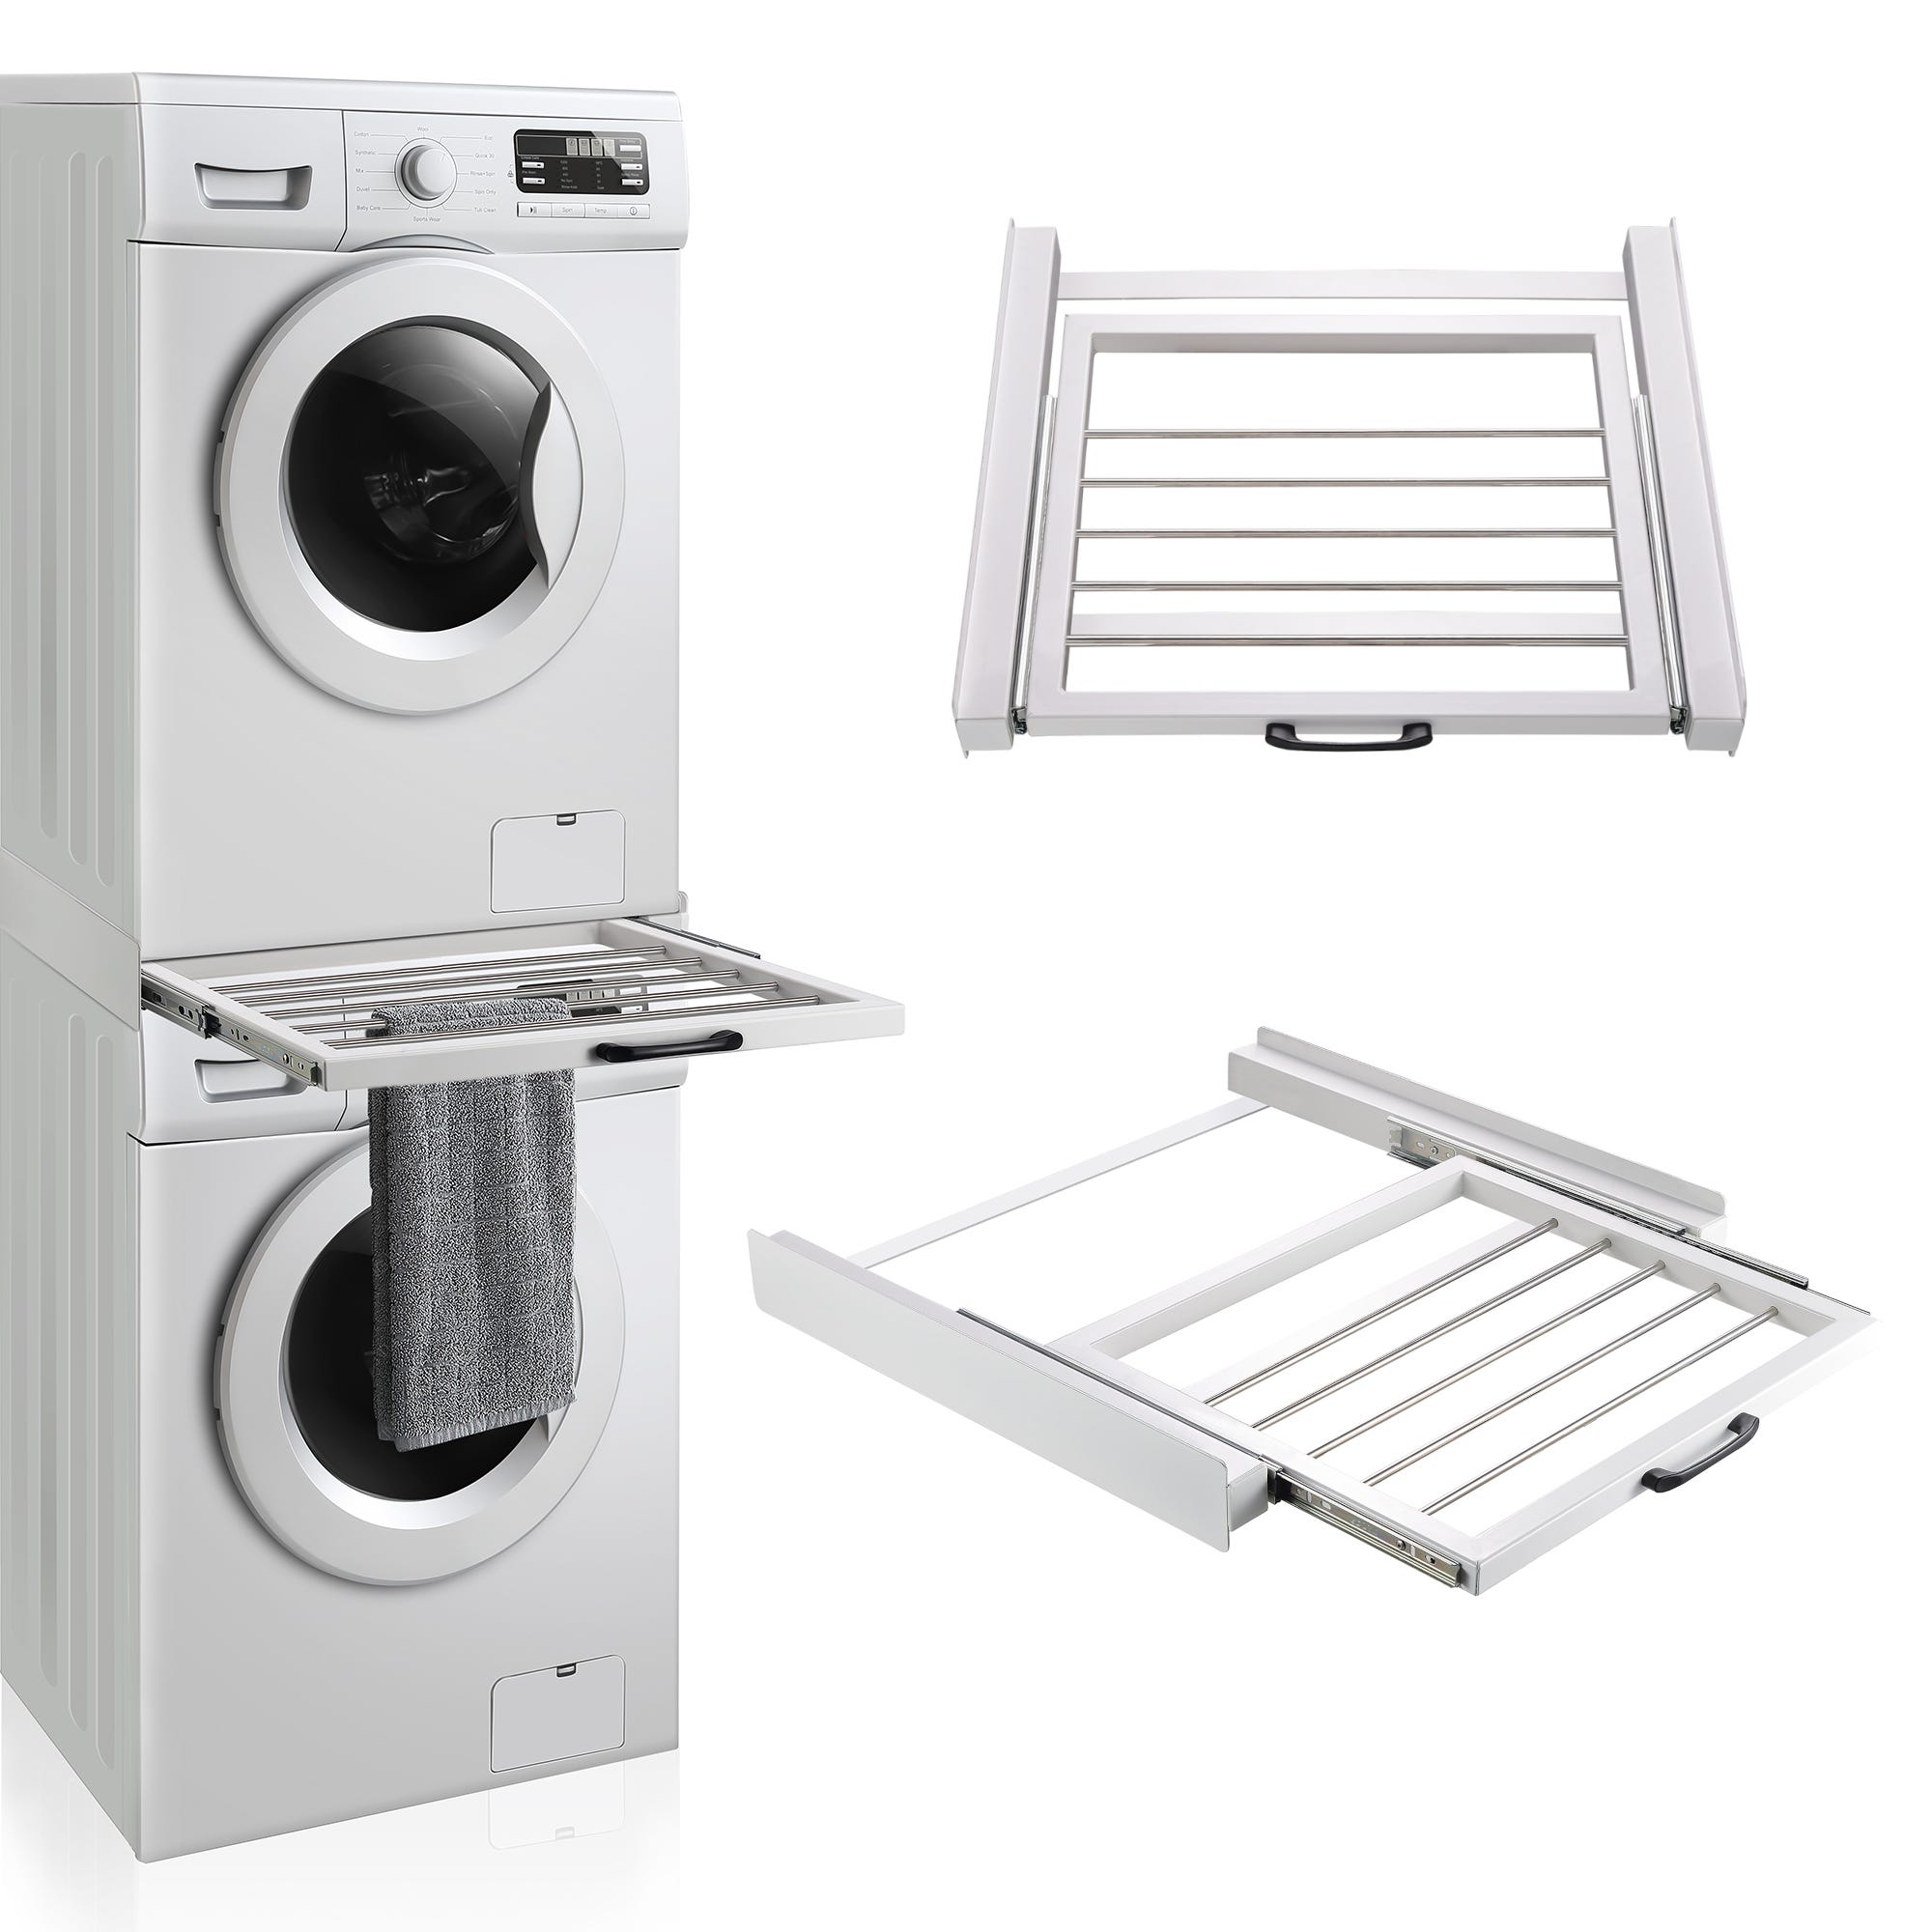 Marco de instalación universal para lavadoras y secadoras [en.casa